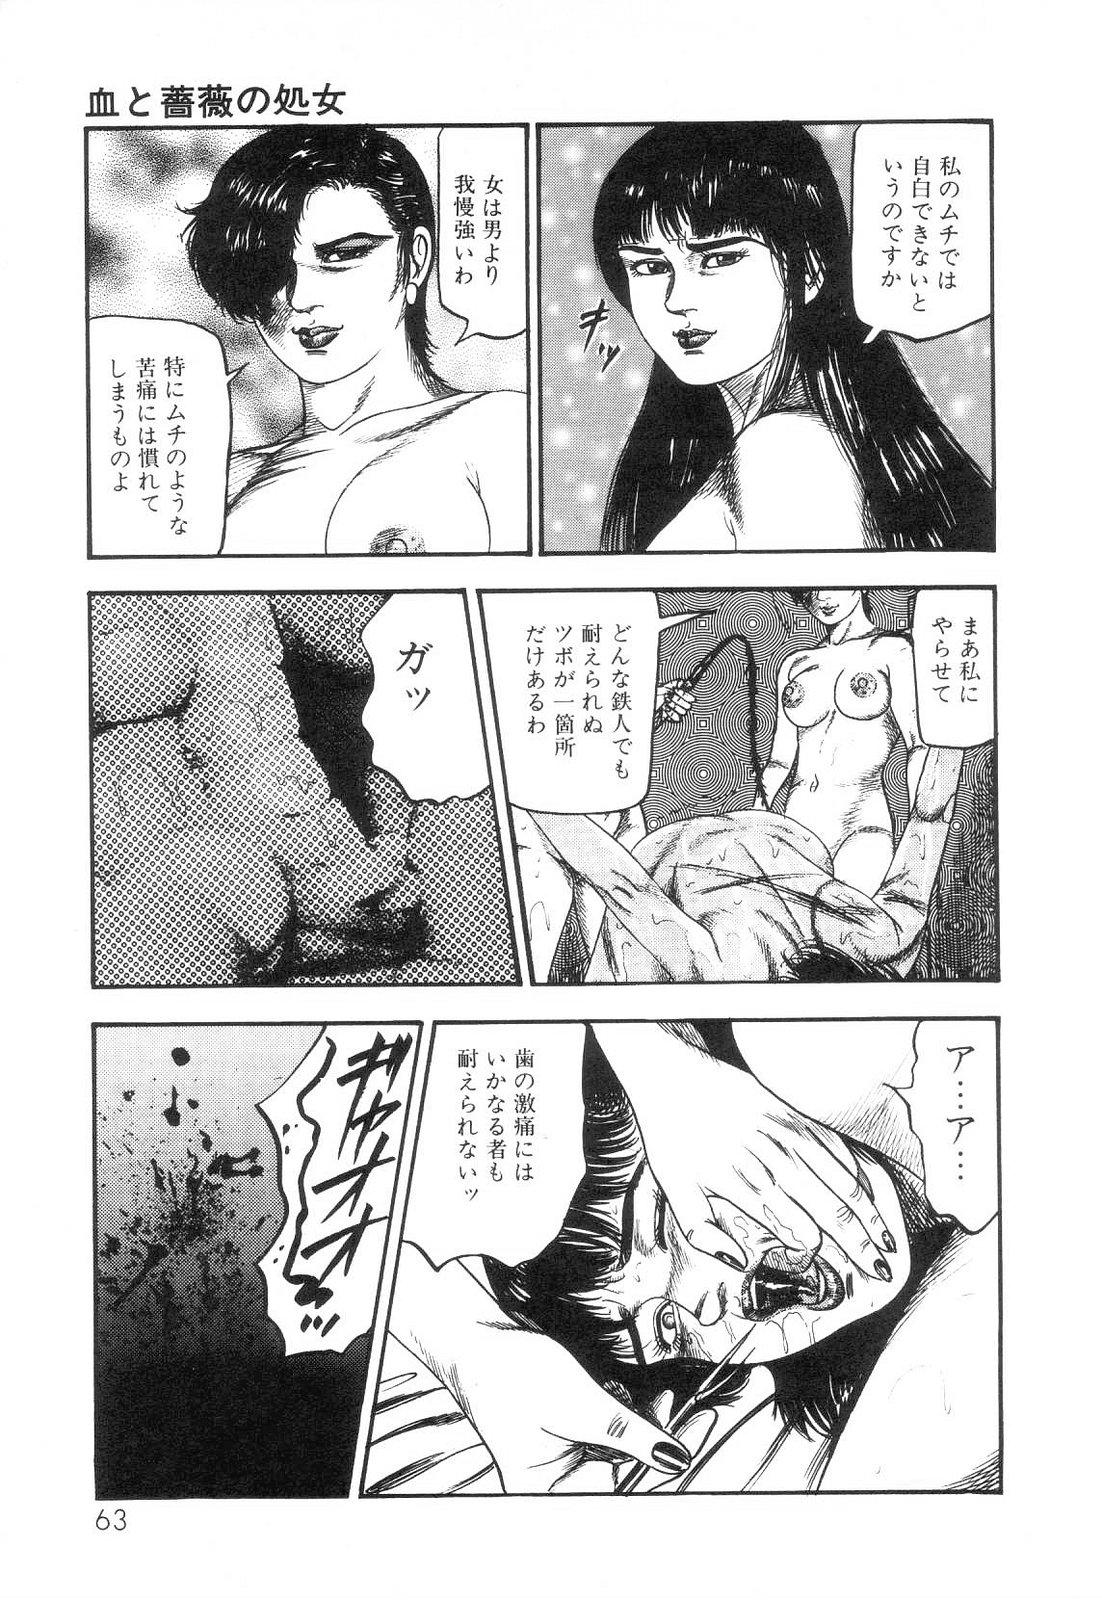 Shiro no Mokushiroku Vol. 6 - Juuai Erika no Shou 64